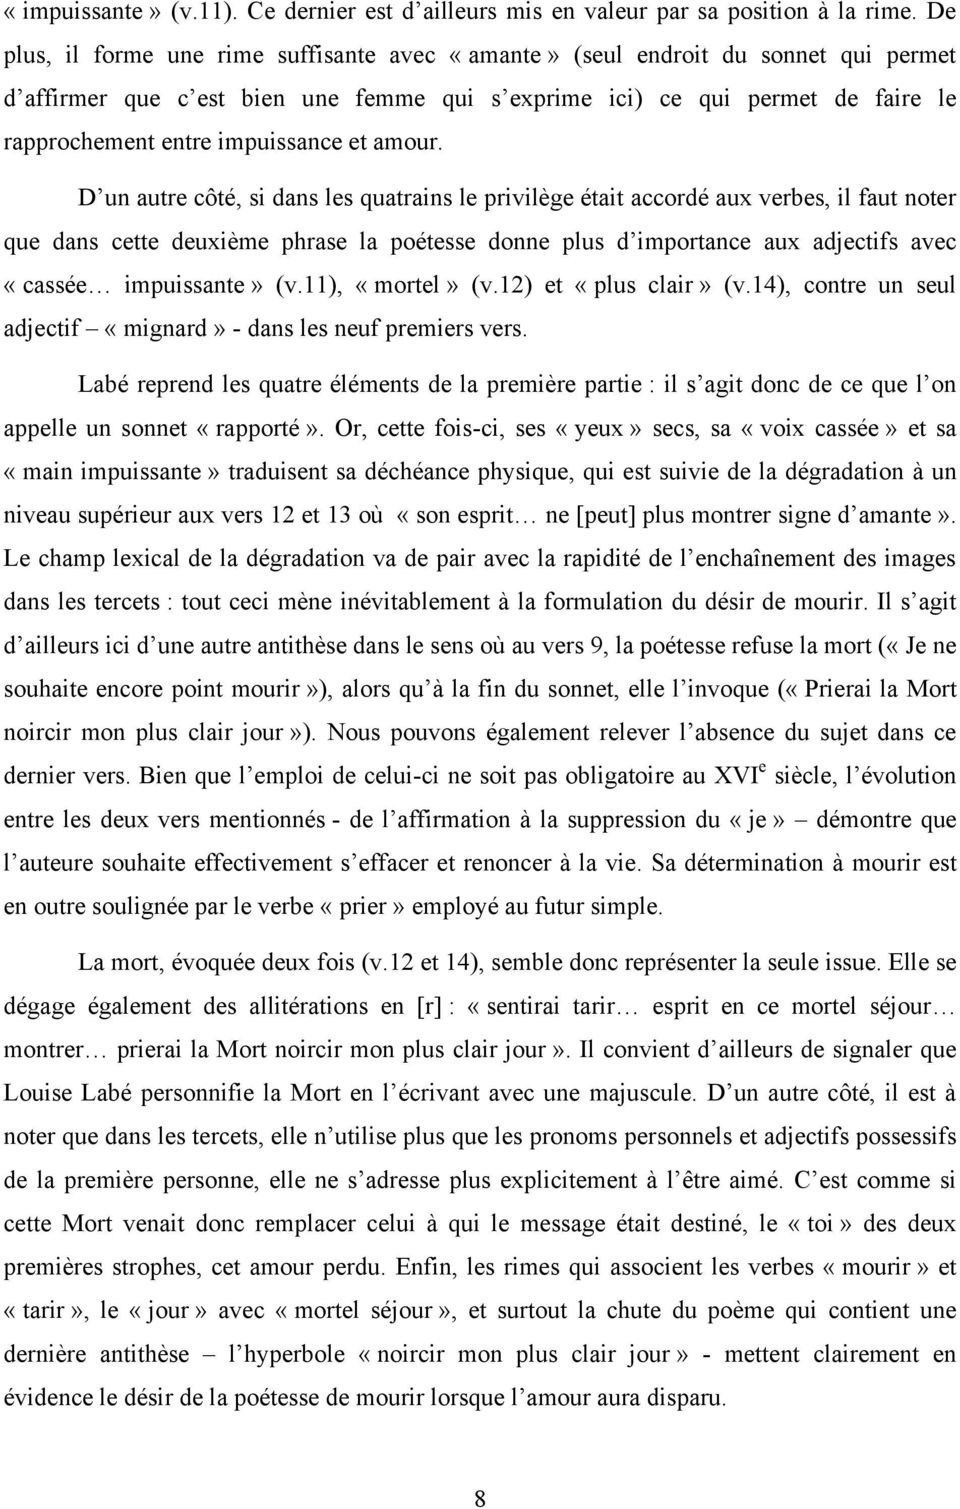 Louise Labé : Sonnet XIV - PDF Téléchargement Gratuit